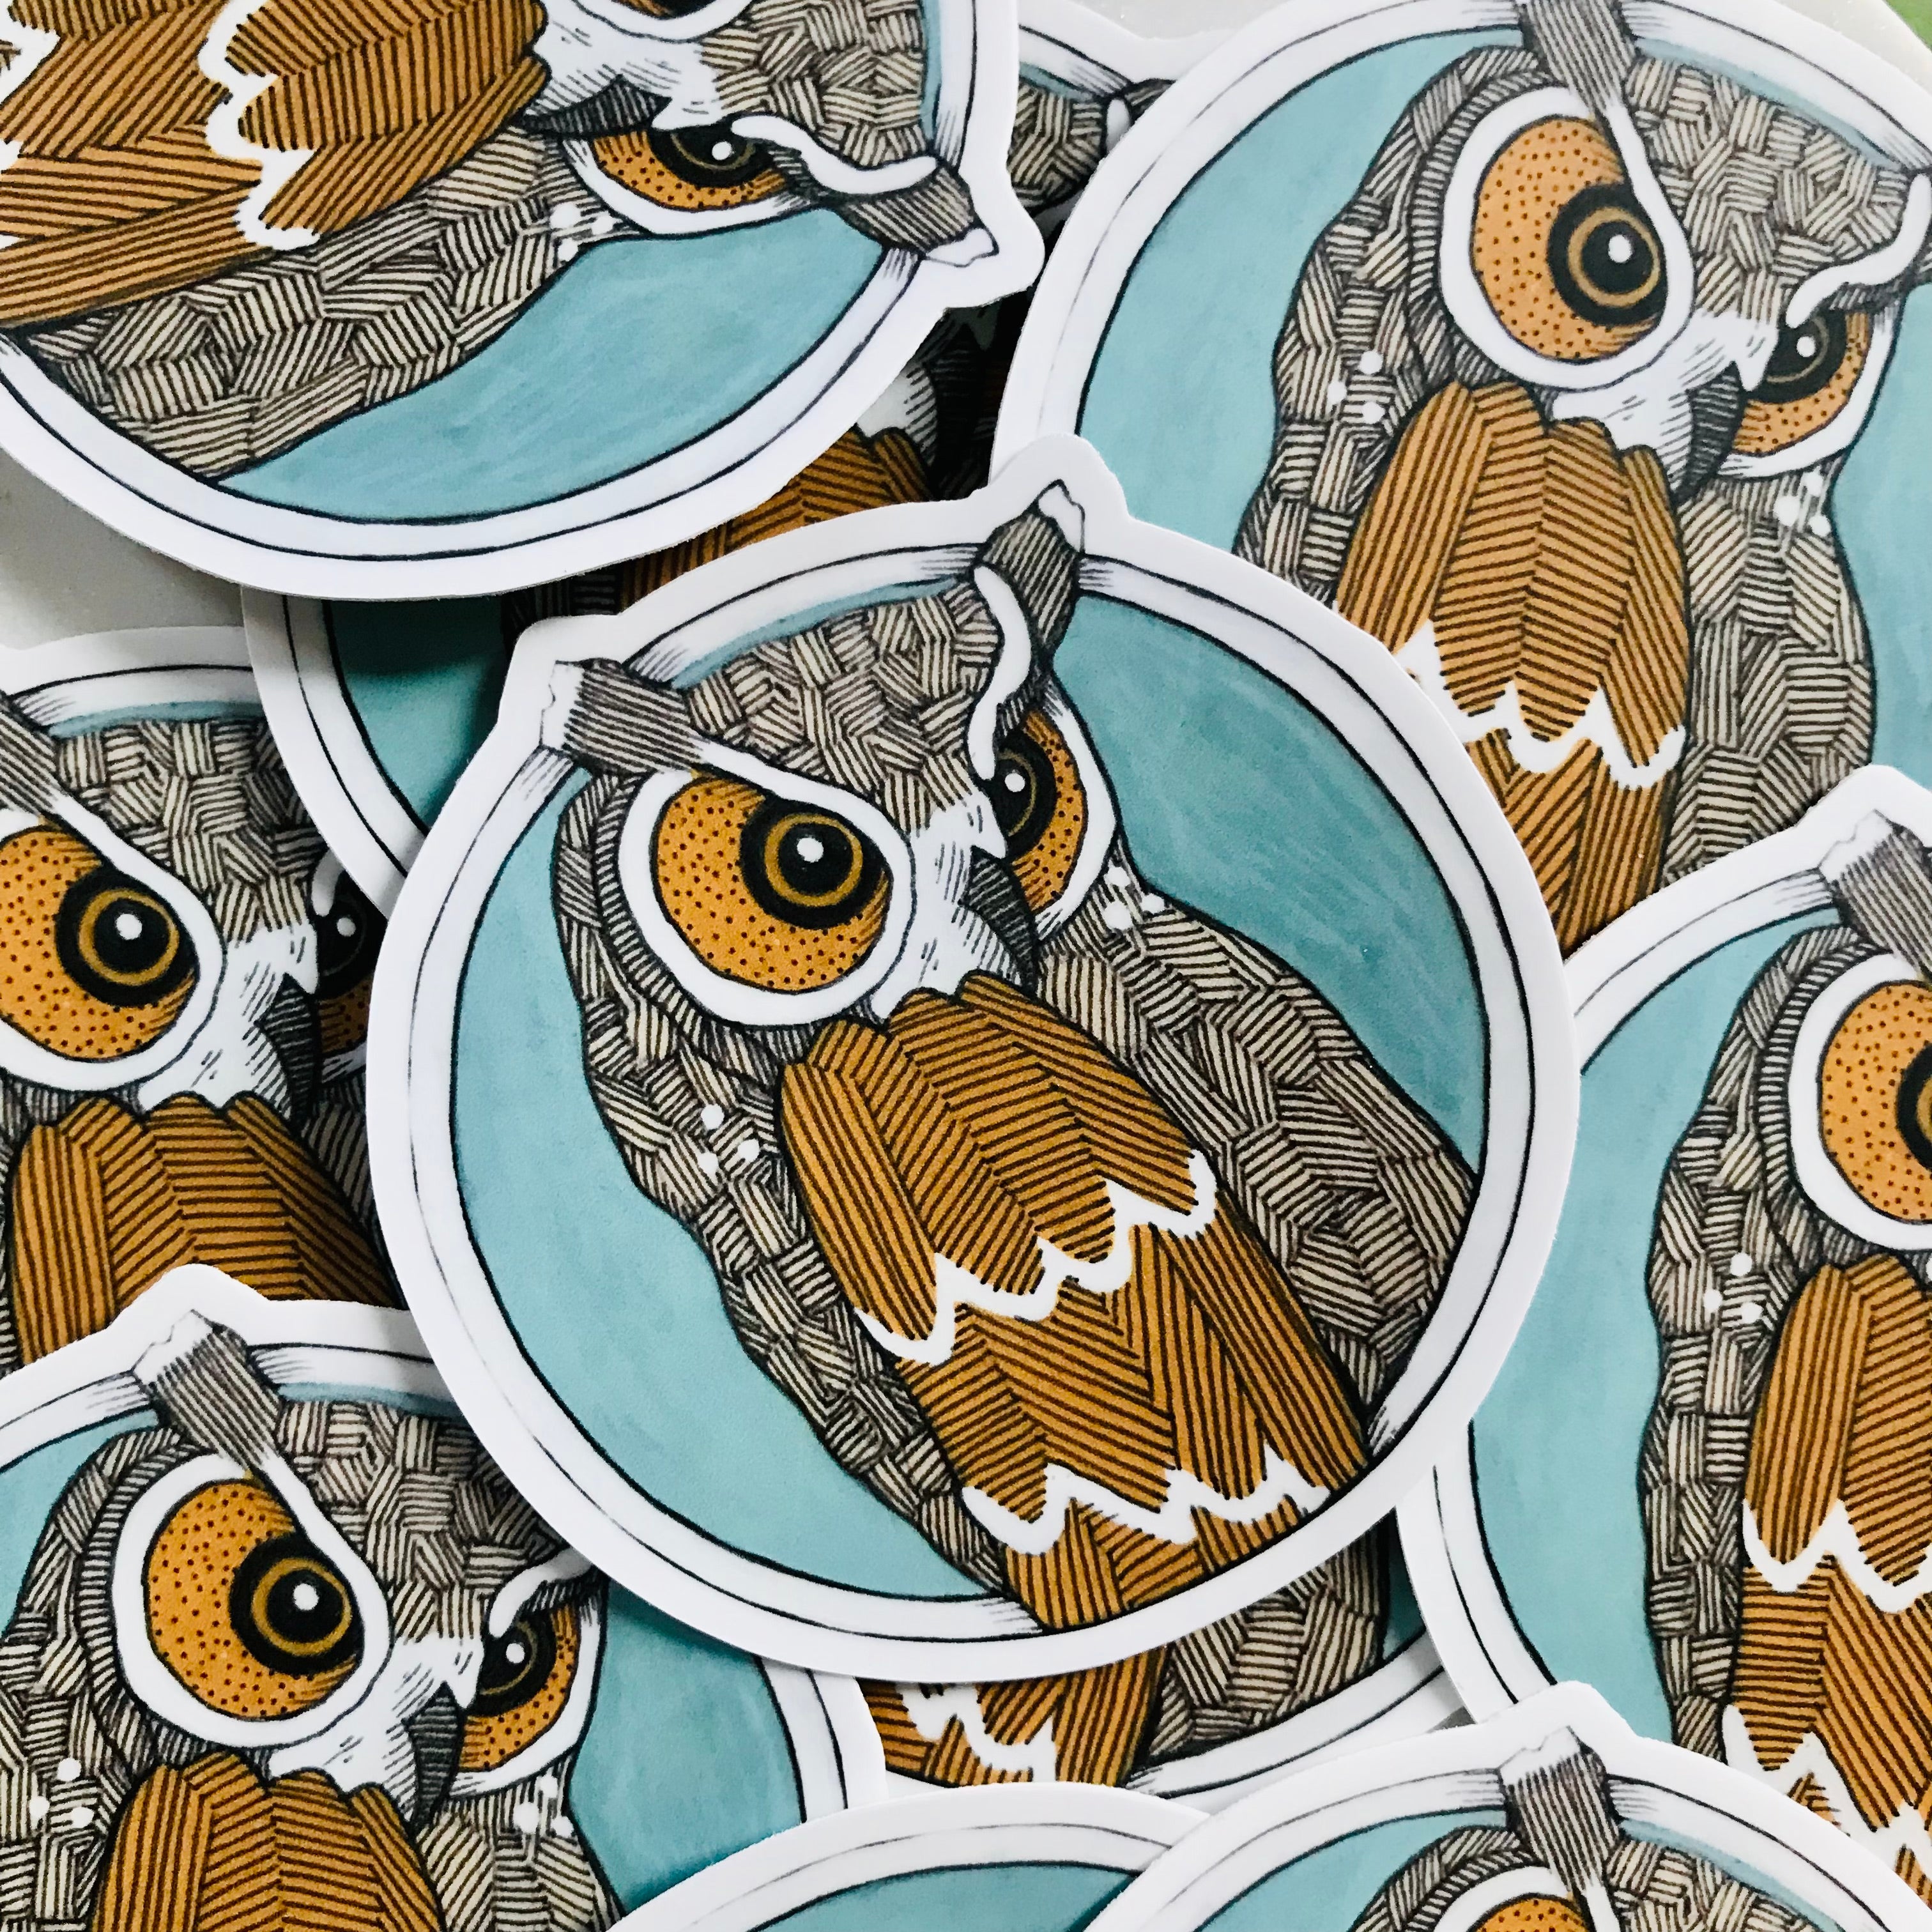 Owl Round Vinyl Sticker